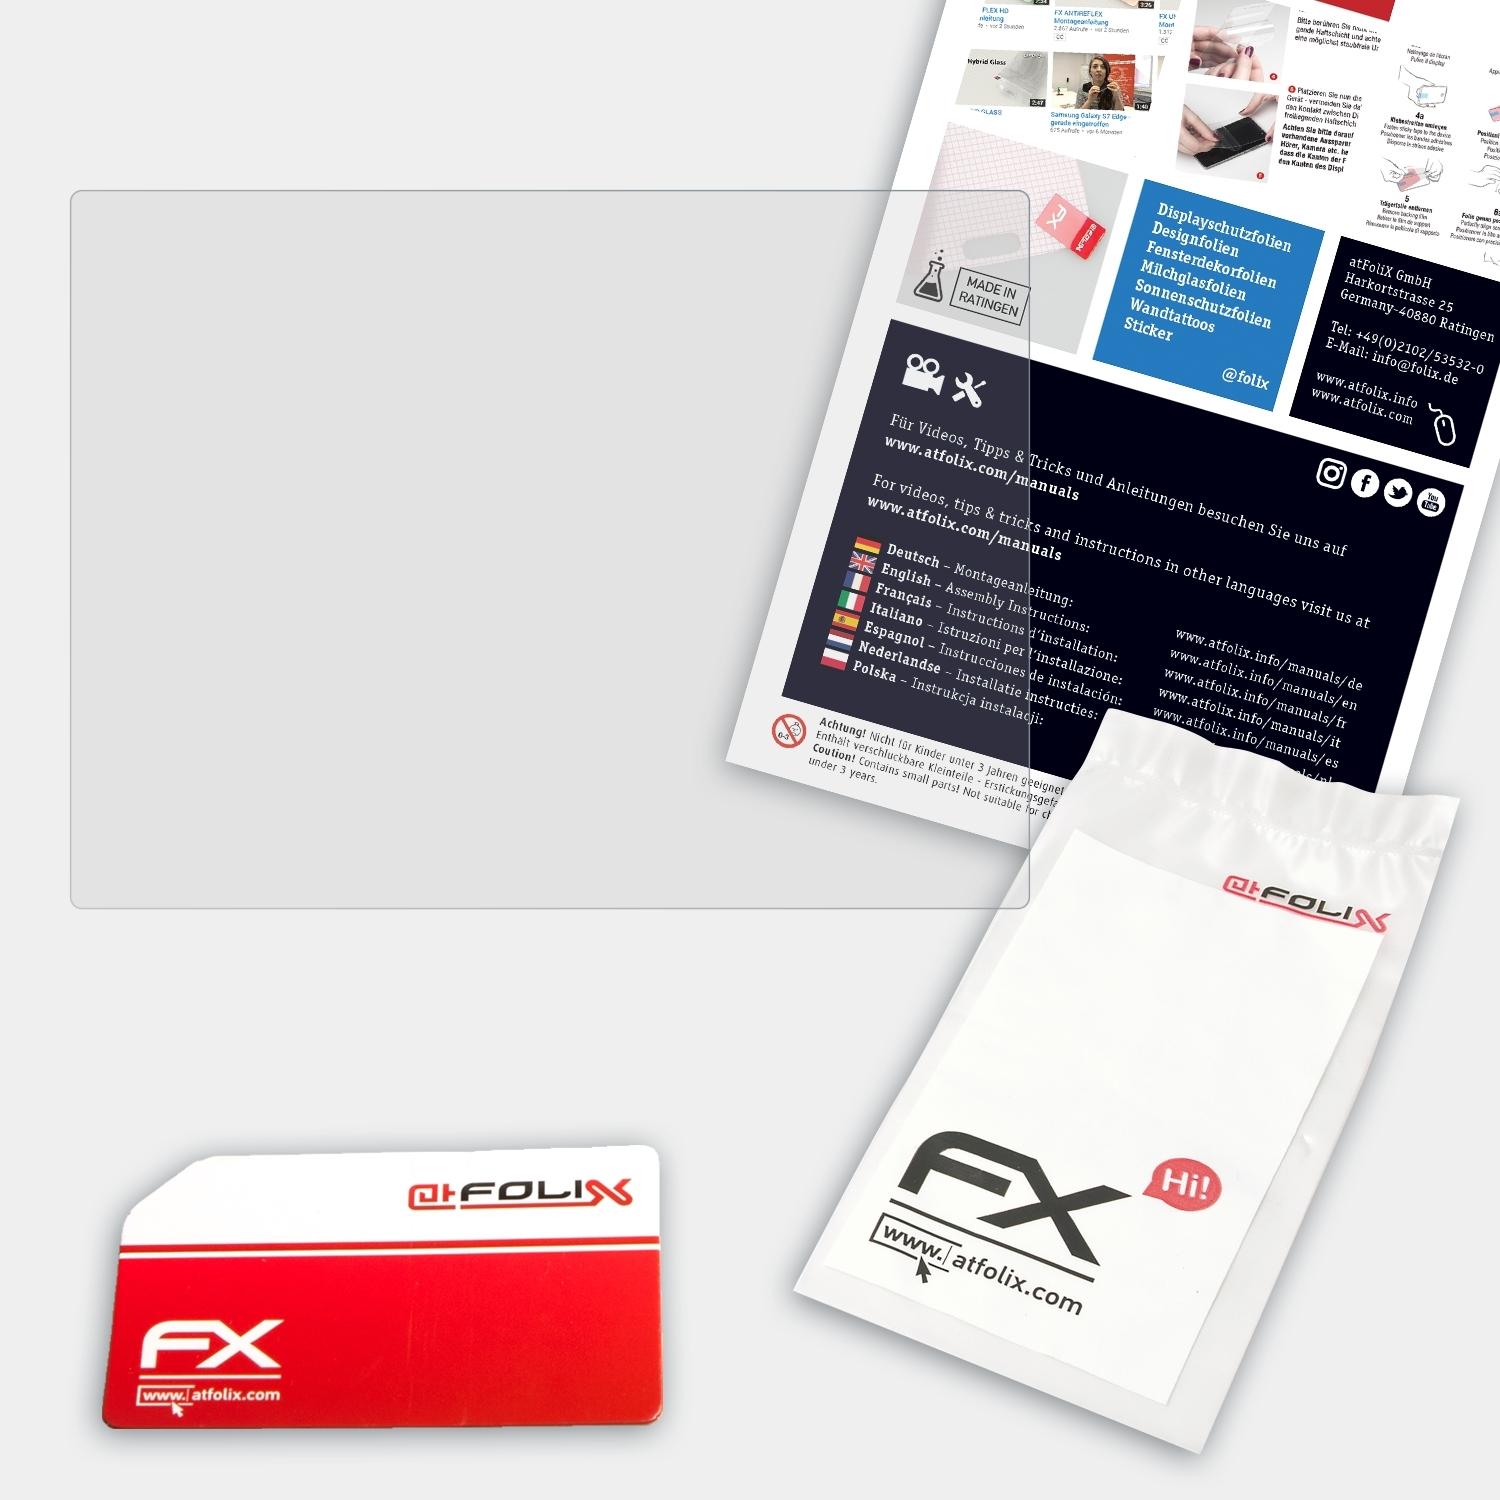 ATFOLIX FX-Antireflex Displayschutz(für Rollei 240 SE) PDF-S